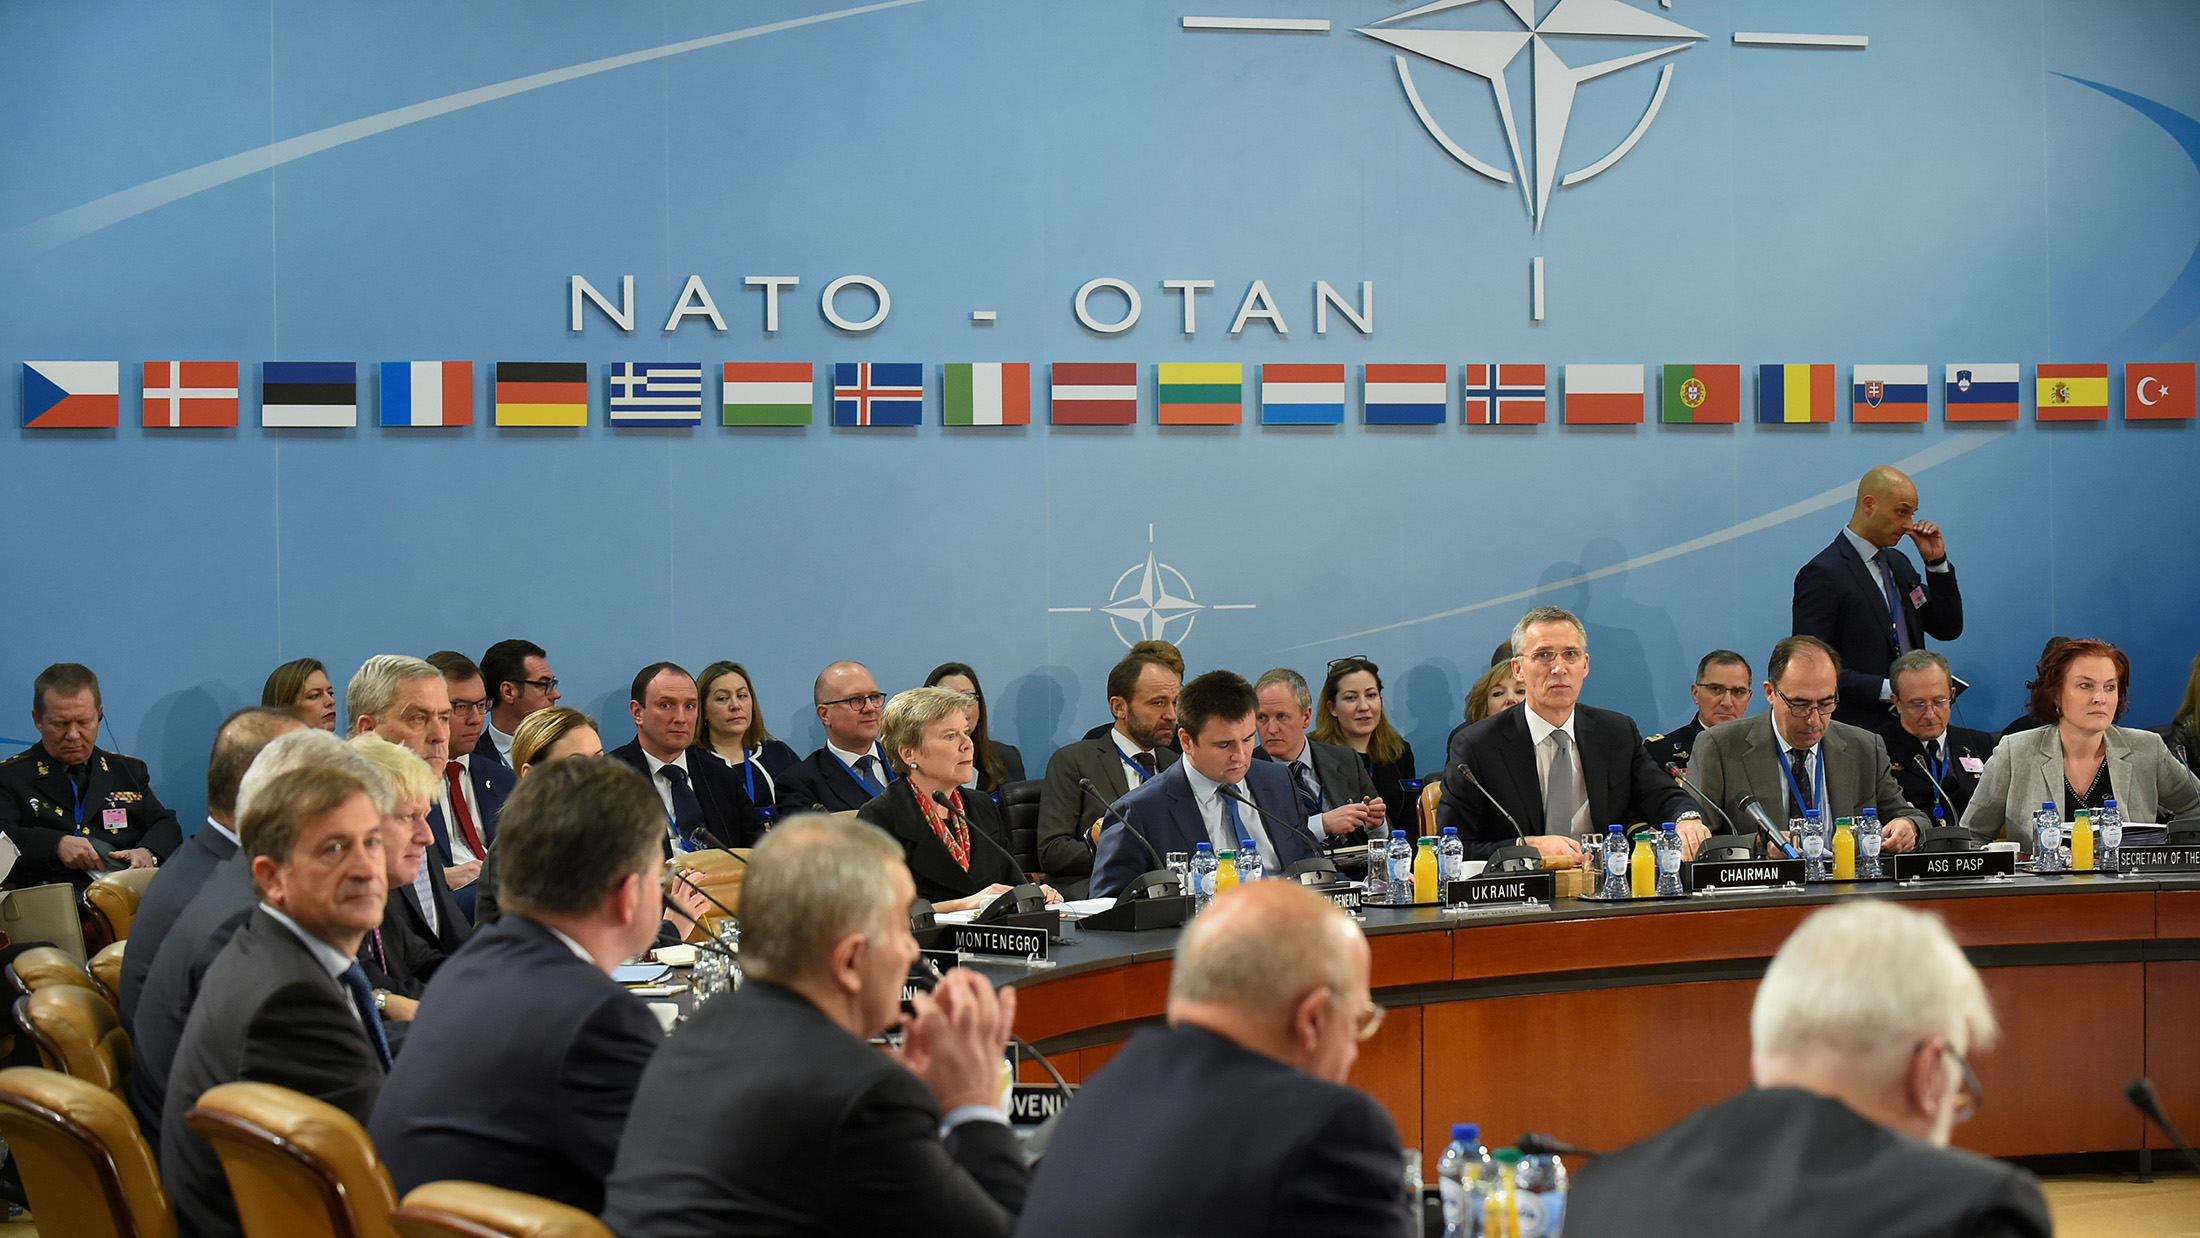 Hasil gambar untuk Trump Slams NATO, Floats Russia Nuke Deal in European Interview